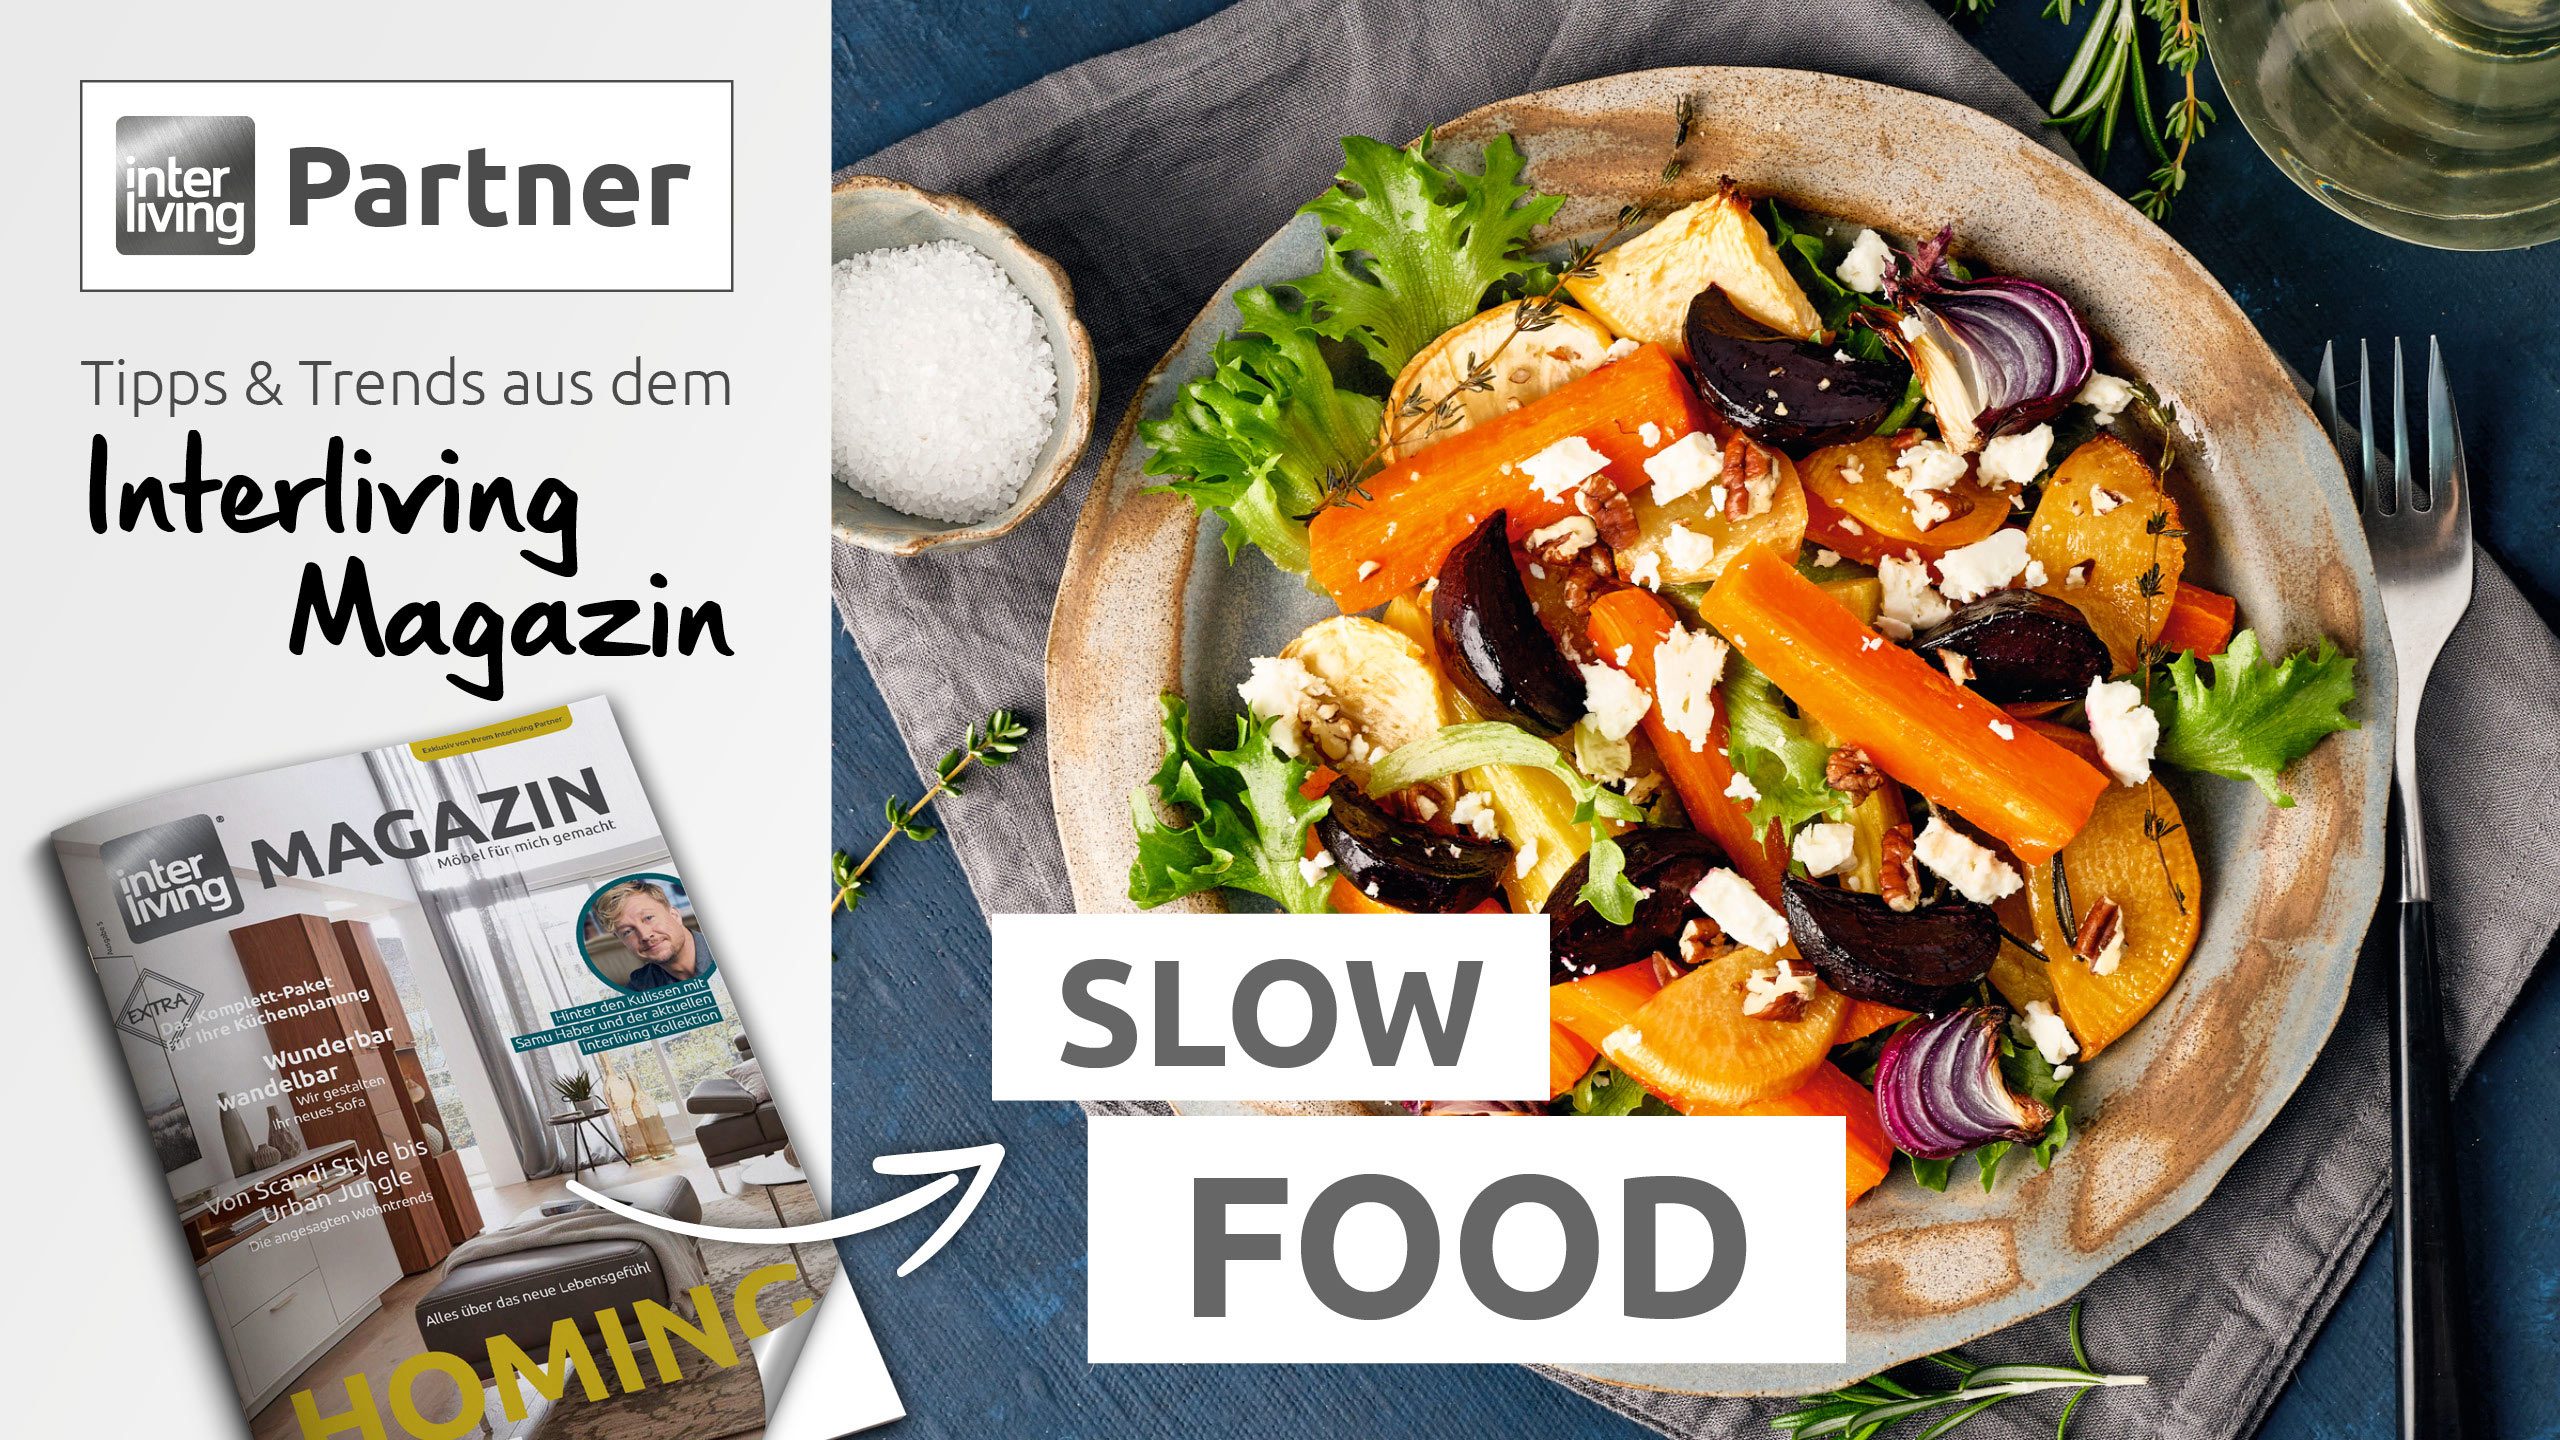 Interliving Partner Trend Tipp: Slow Food – Regionale Lebensmittel für einen gesunden Lifestyle